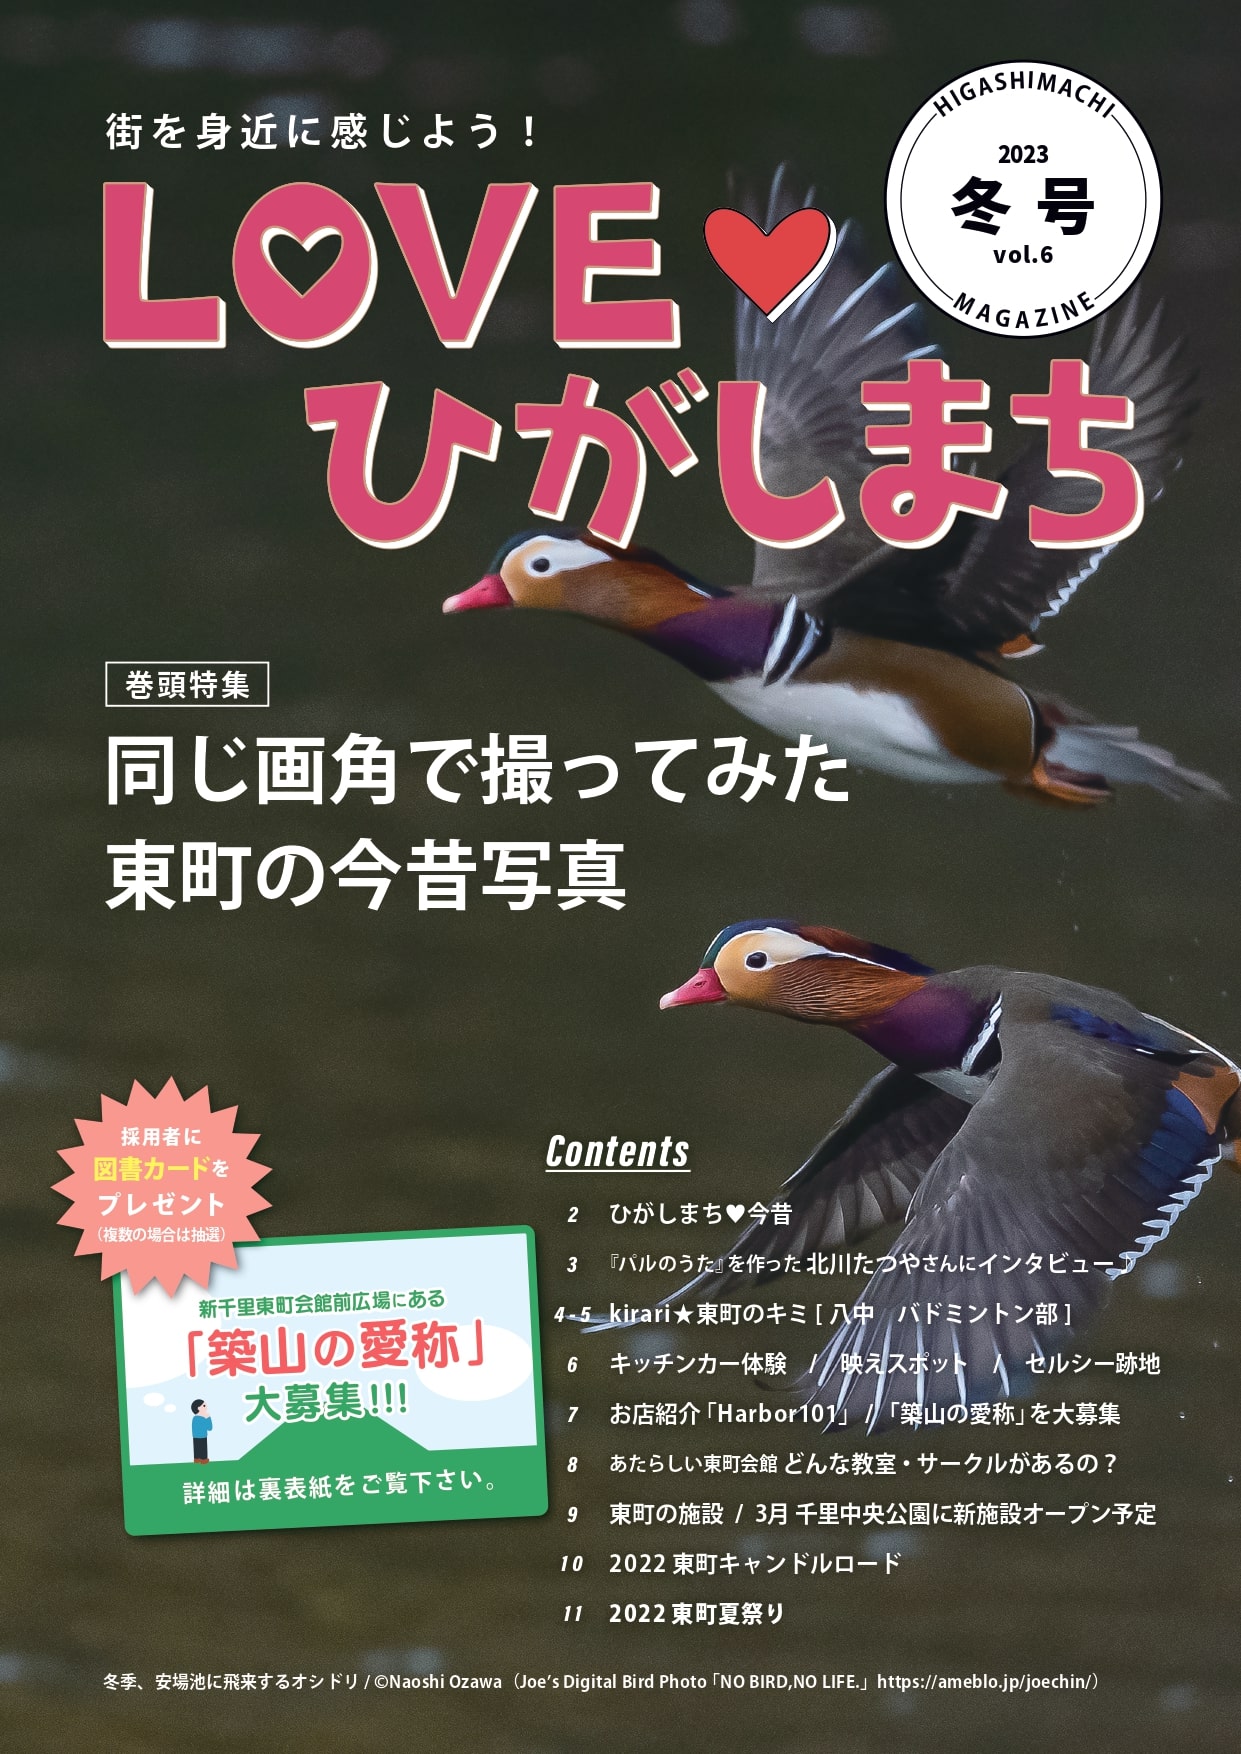 2023年2月19日発行LOVEひがしまち冬号（vol.6）